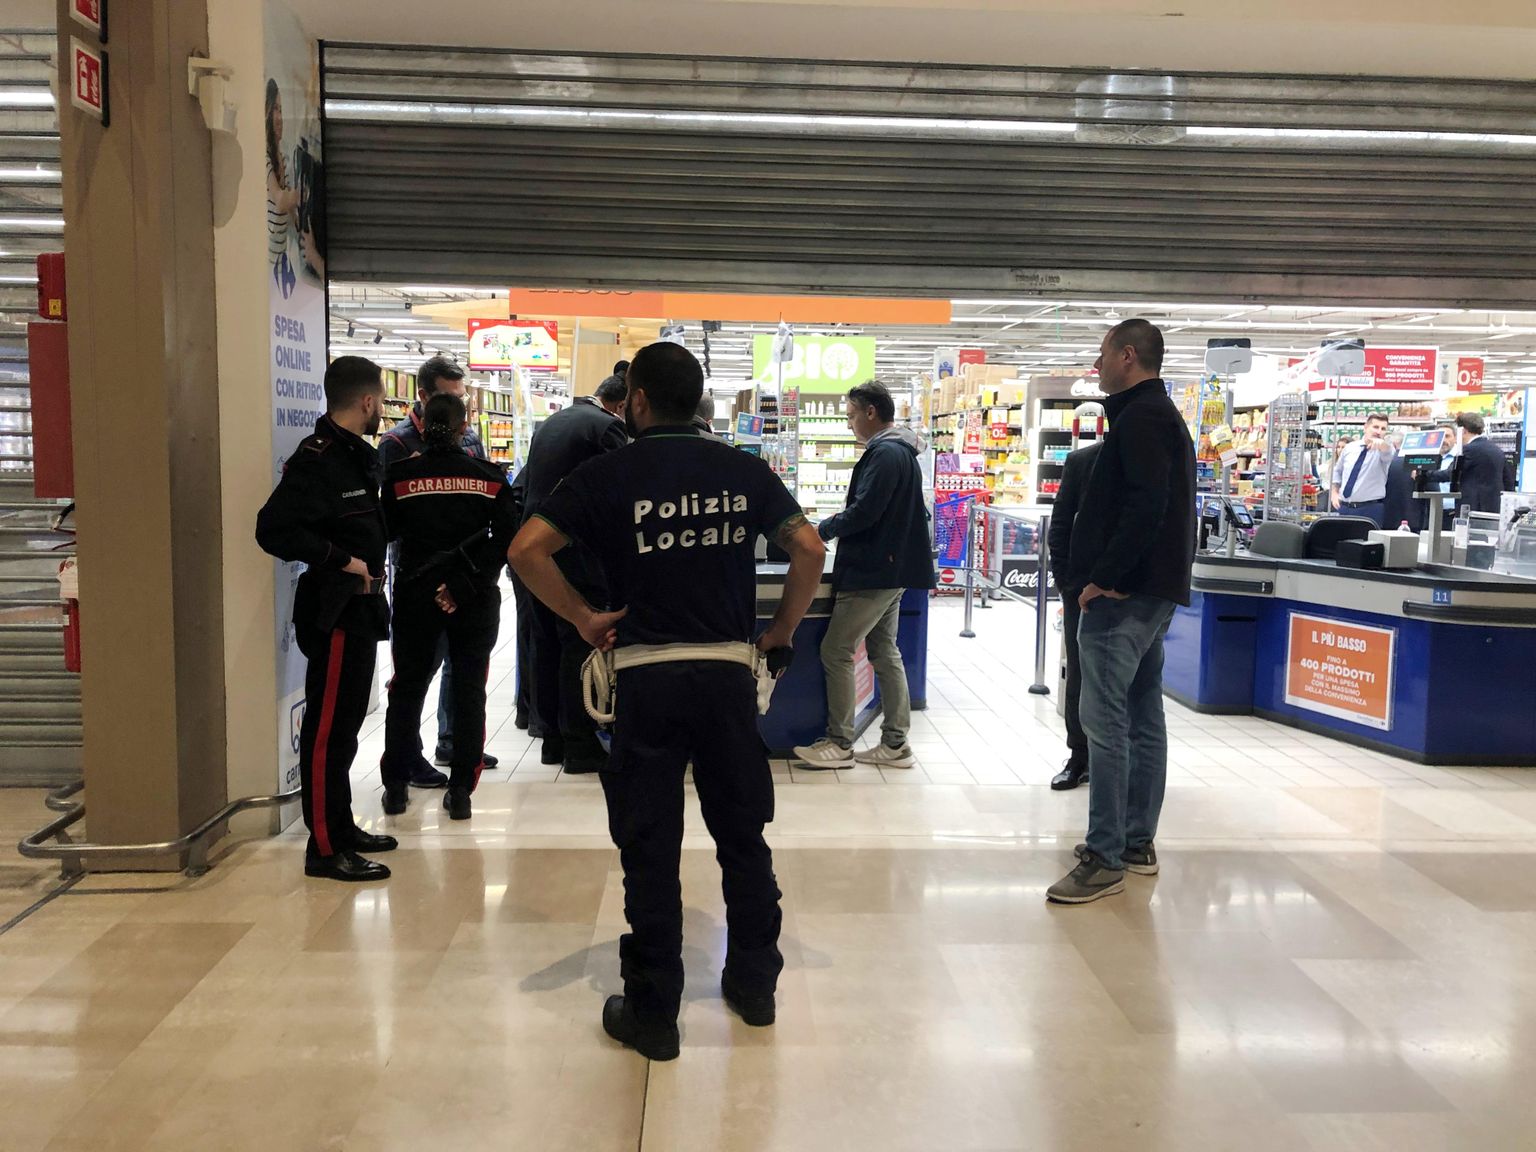 Кадр с места происшествия. В миланском торговом центре один из сотрудников схватился за нож и ранил пятерых человек.